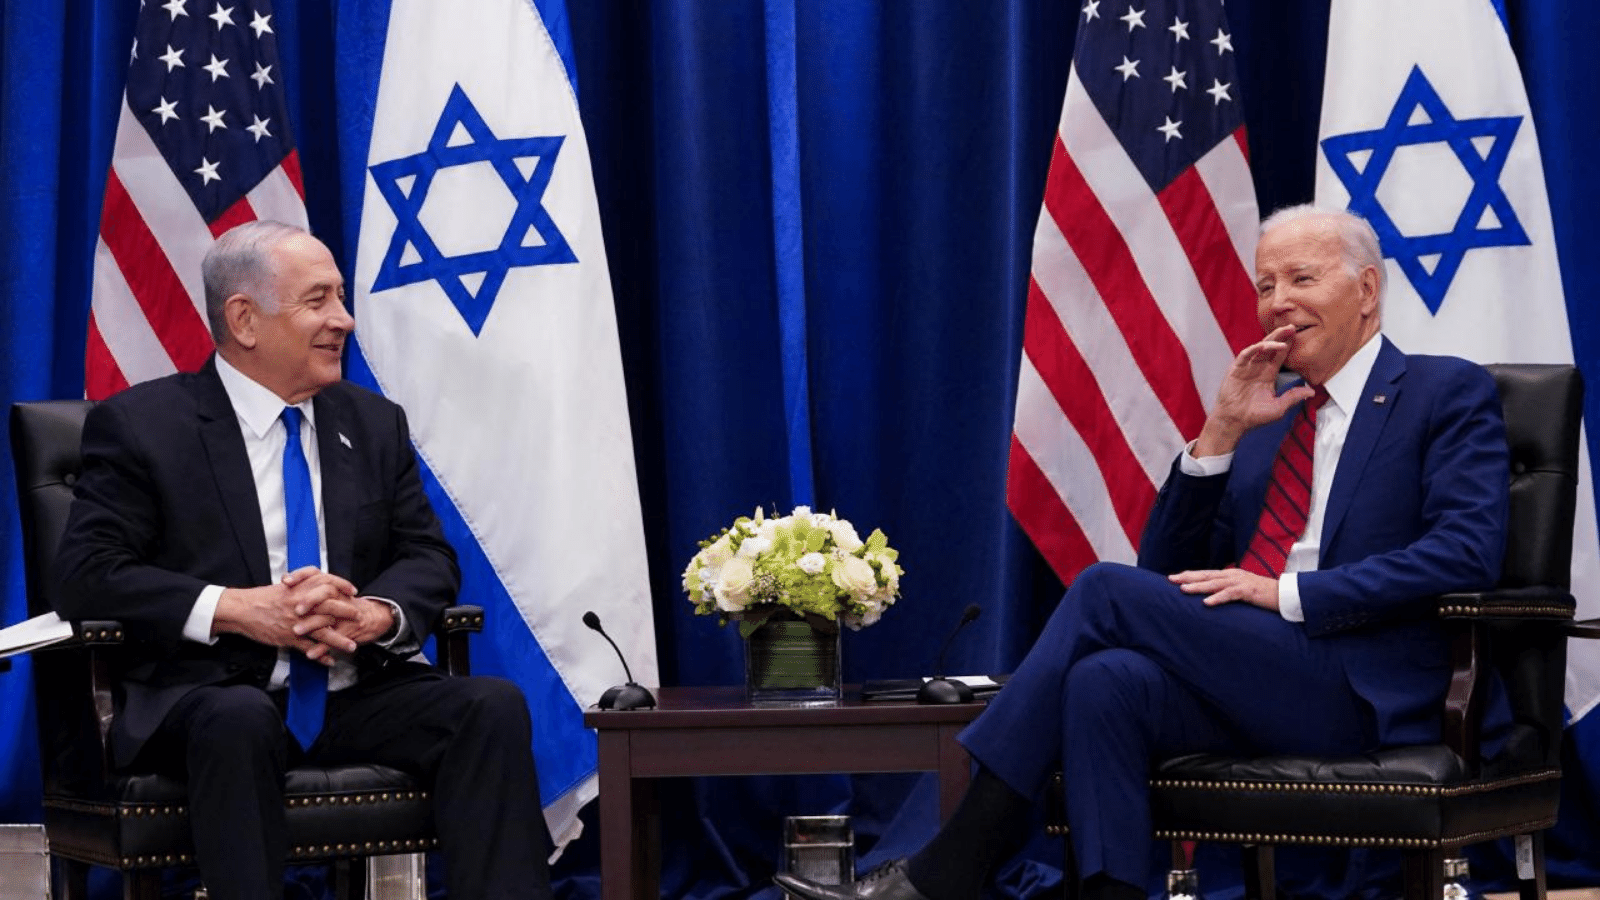 Netanyahu can, Biden et derdinde